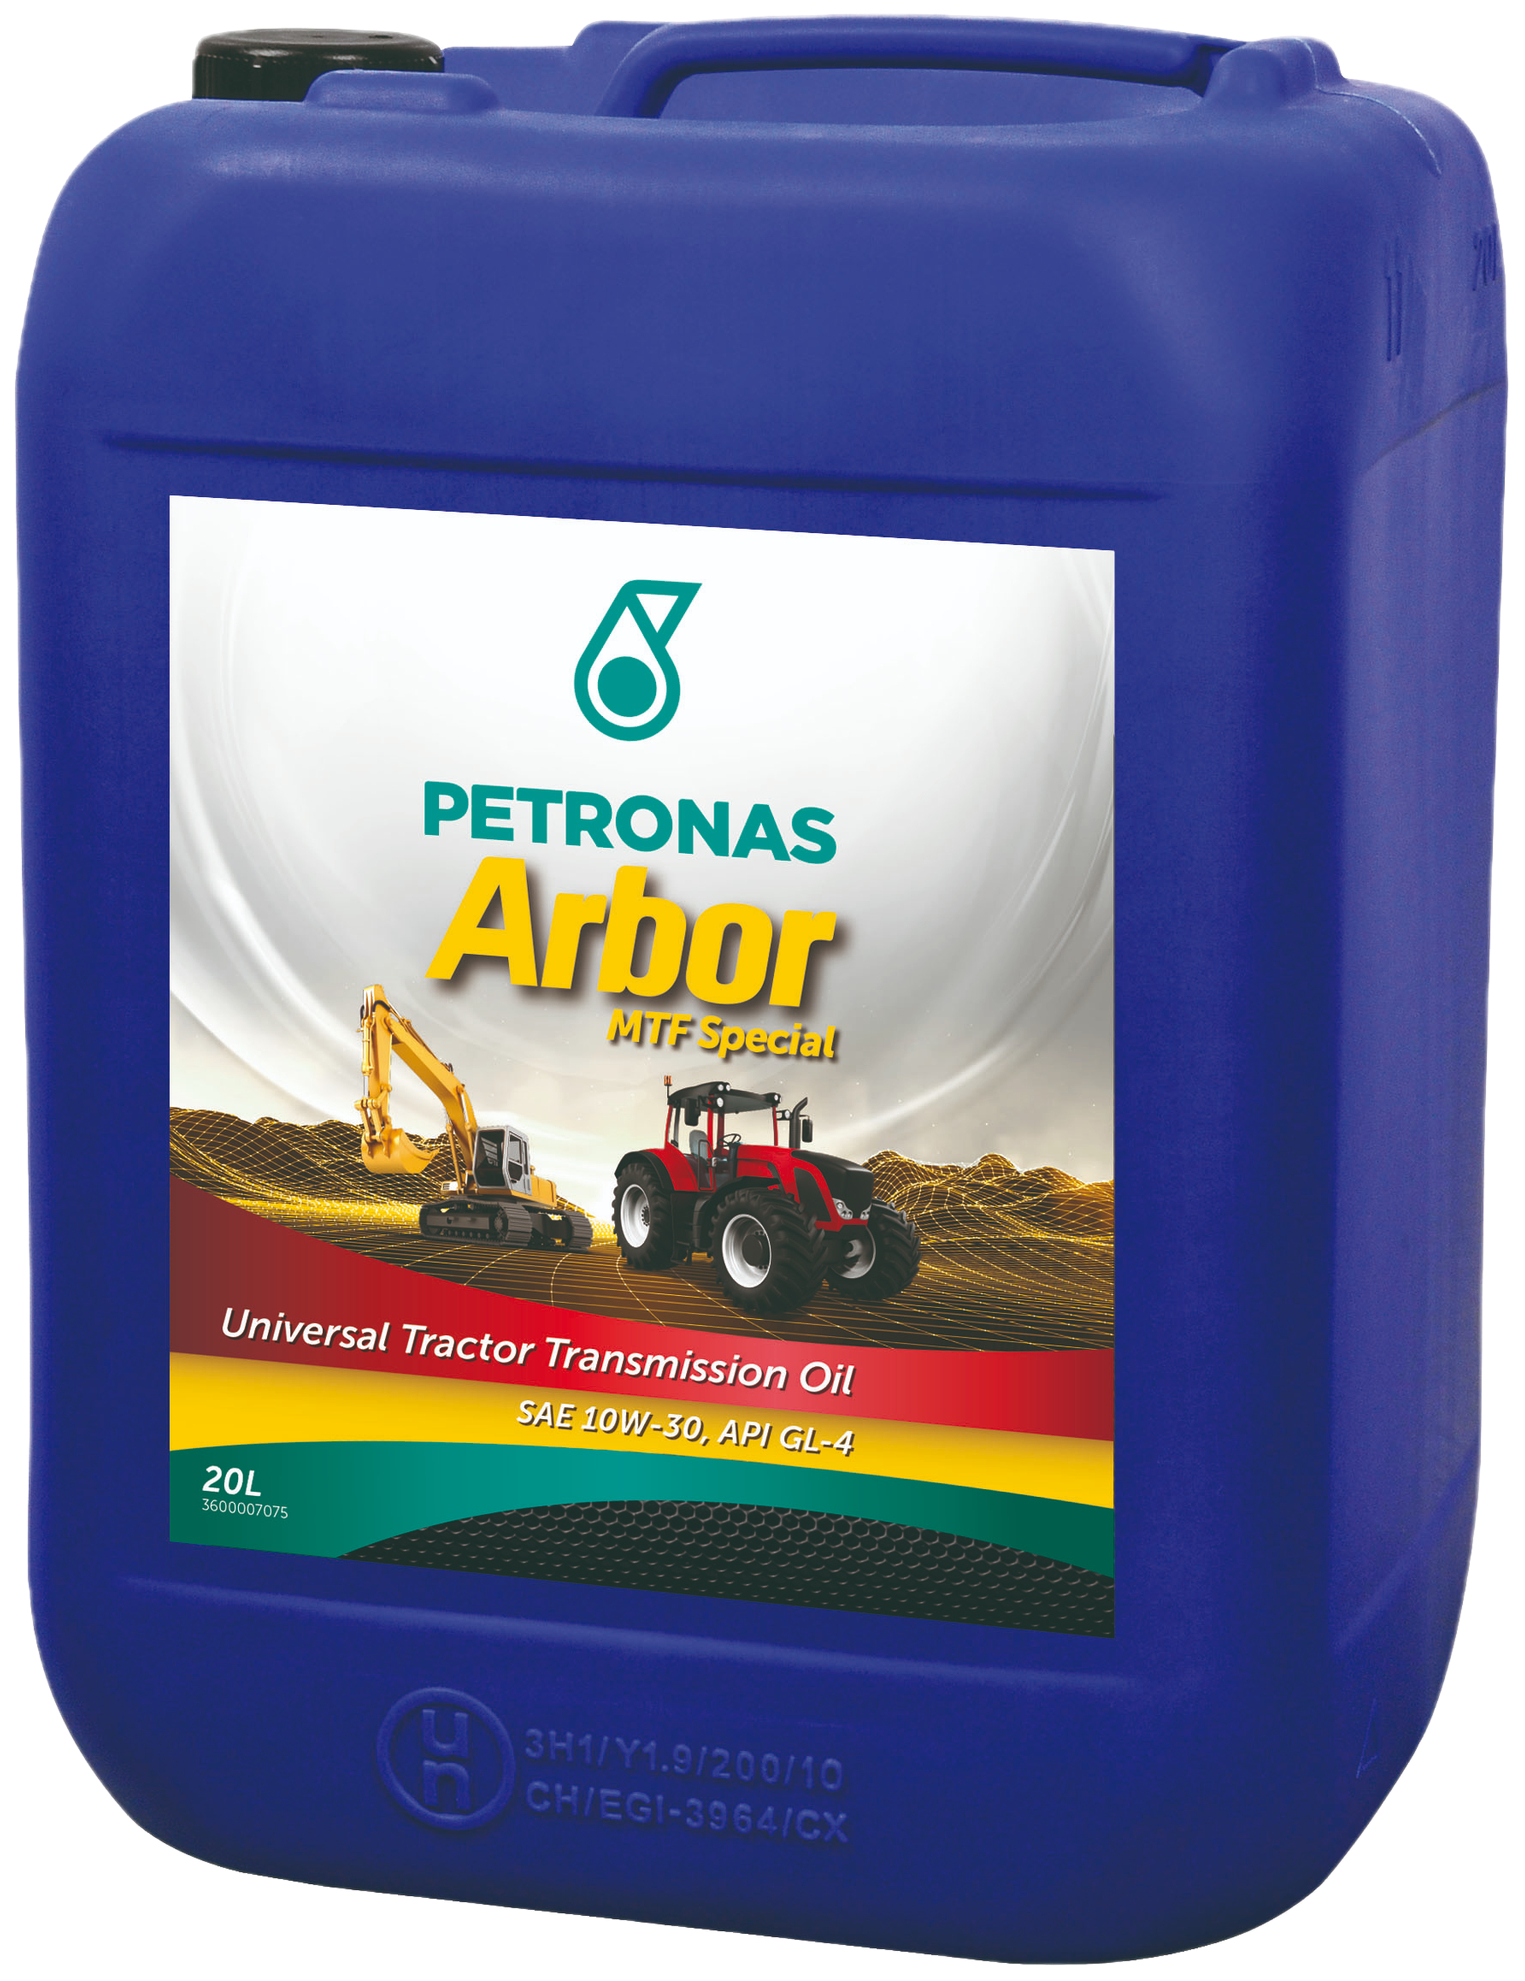 P36451910-20 Dit is een UTTO smeermiddel voor algemeen gebruik dat zeer hoge prestaties garandeert van transmissies, hydraulische systemen en oliebadremmen van de laatste generatie tractors, landbouwmachines en graafmachines.